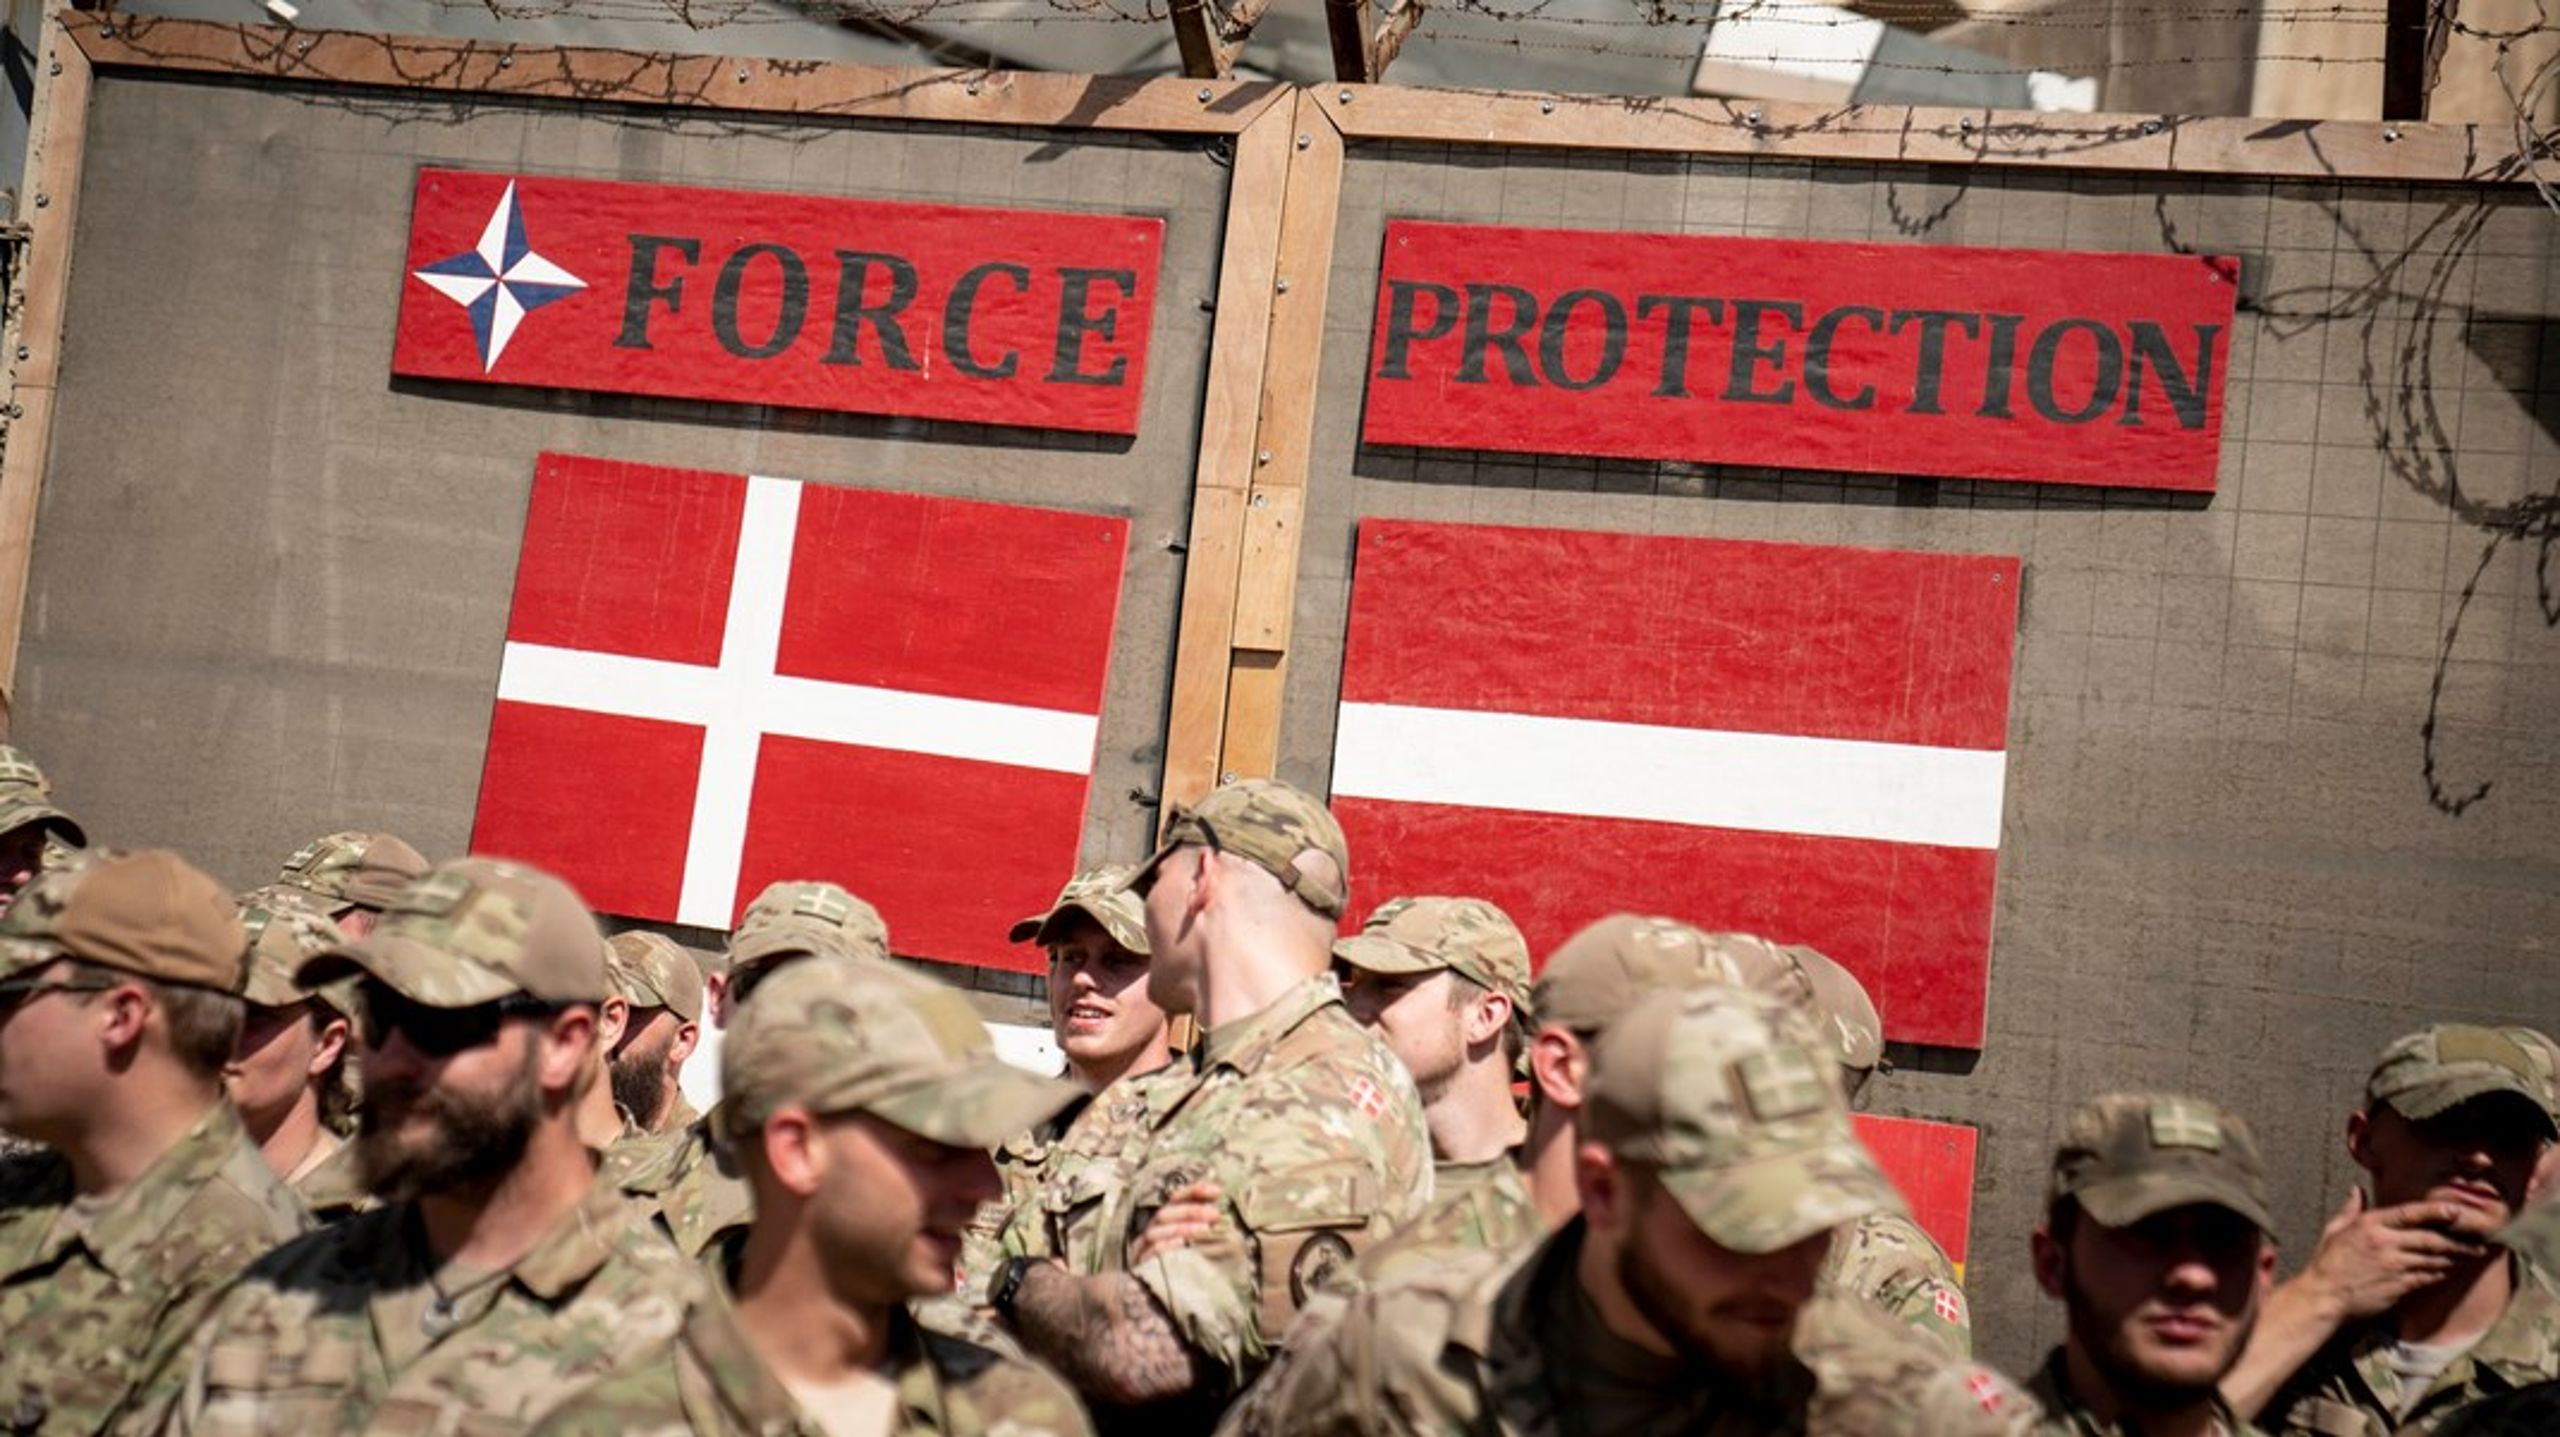 Situationen i dag er den, at Danmark fortsat kan forsøge at få international indflydelse ved at bruge sine militære styrker, skriver&nbsp;Gorm Rye Olsen.